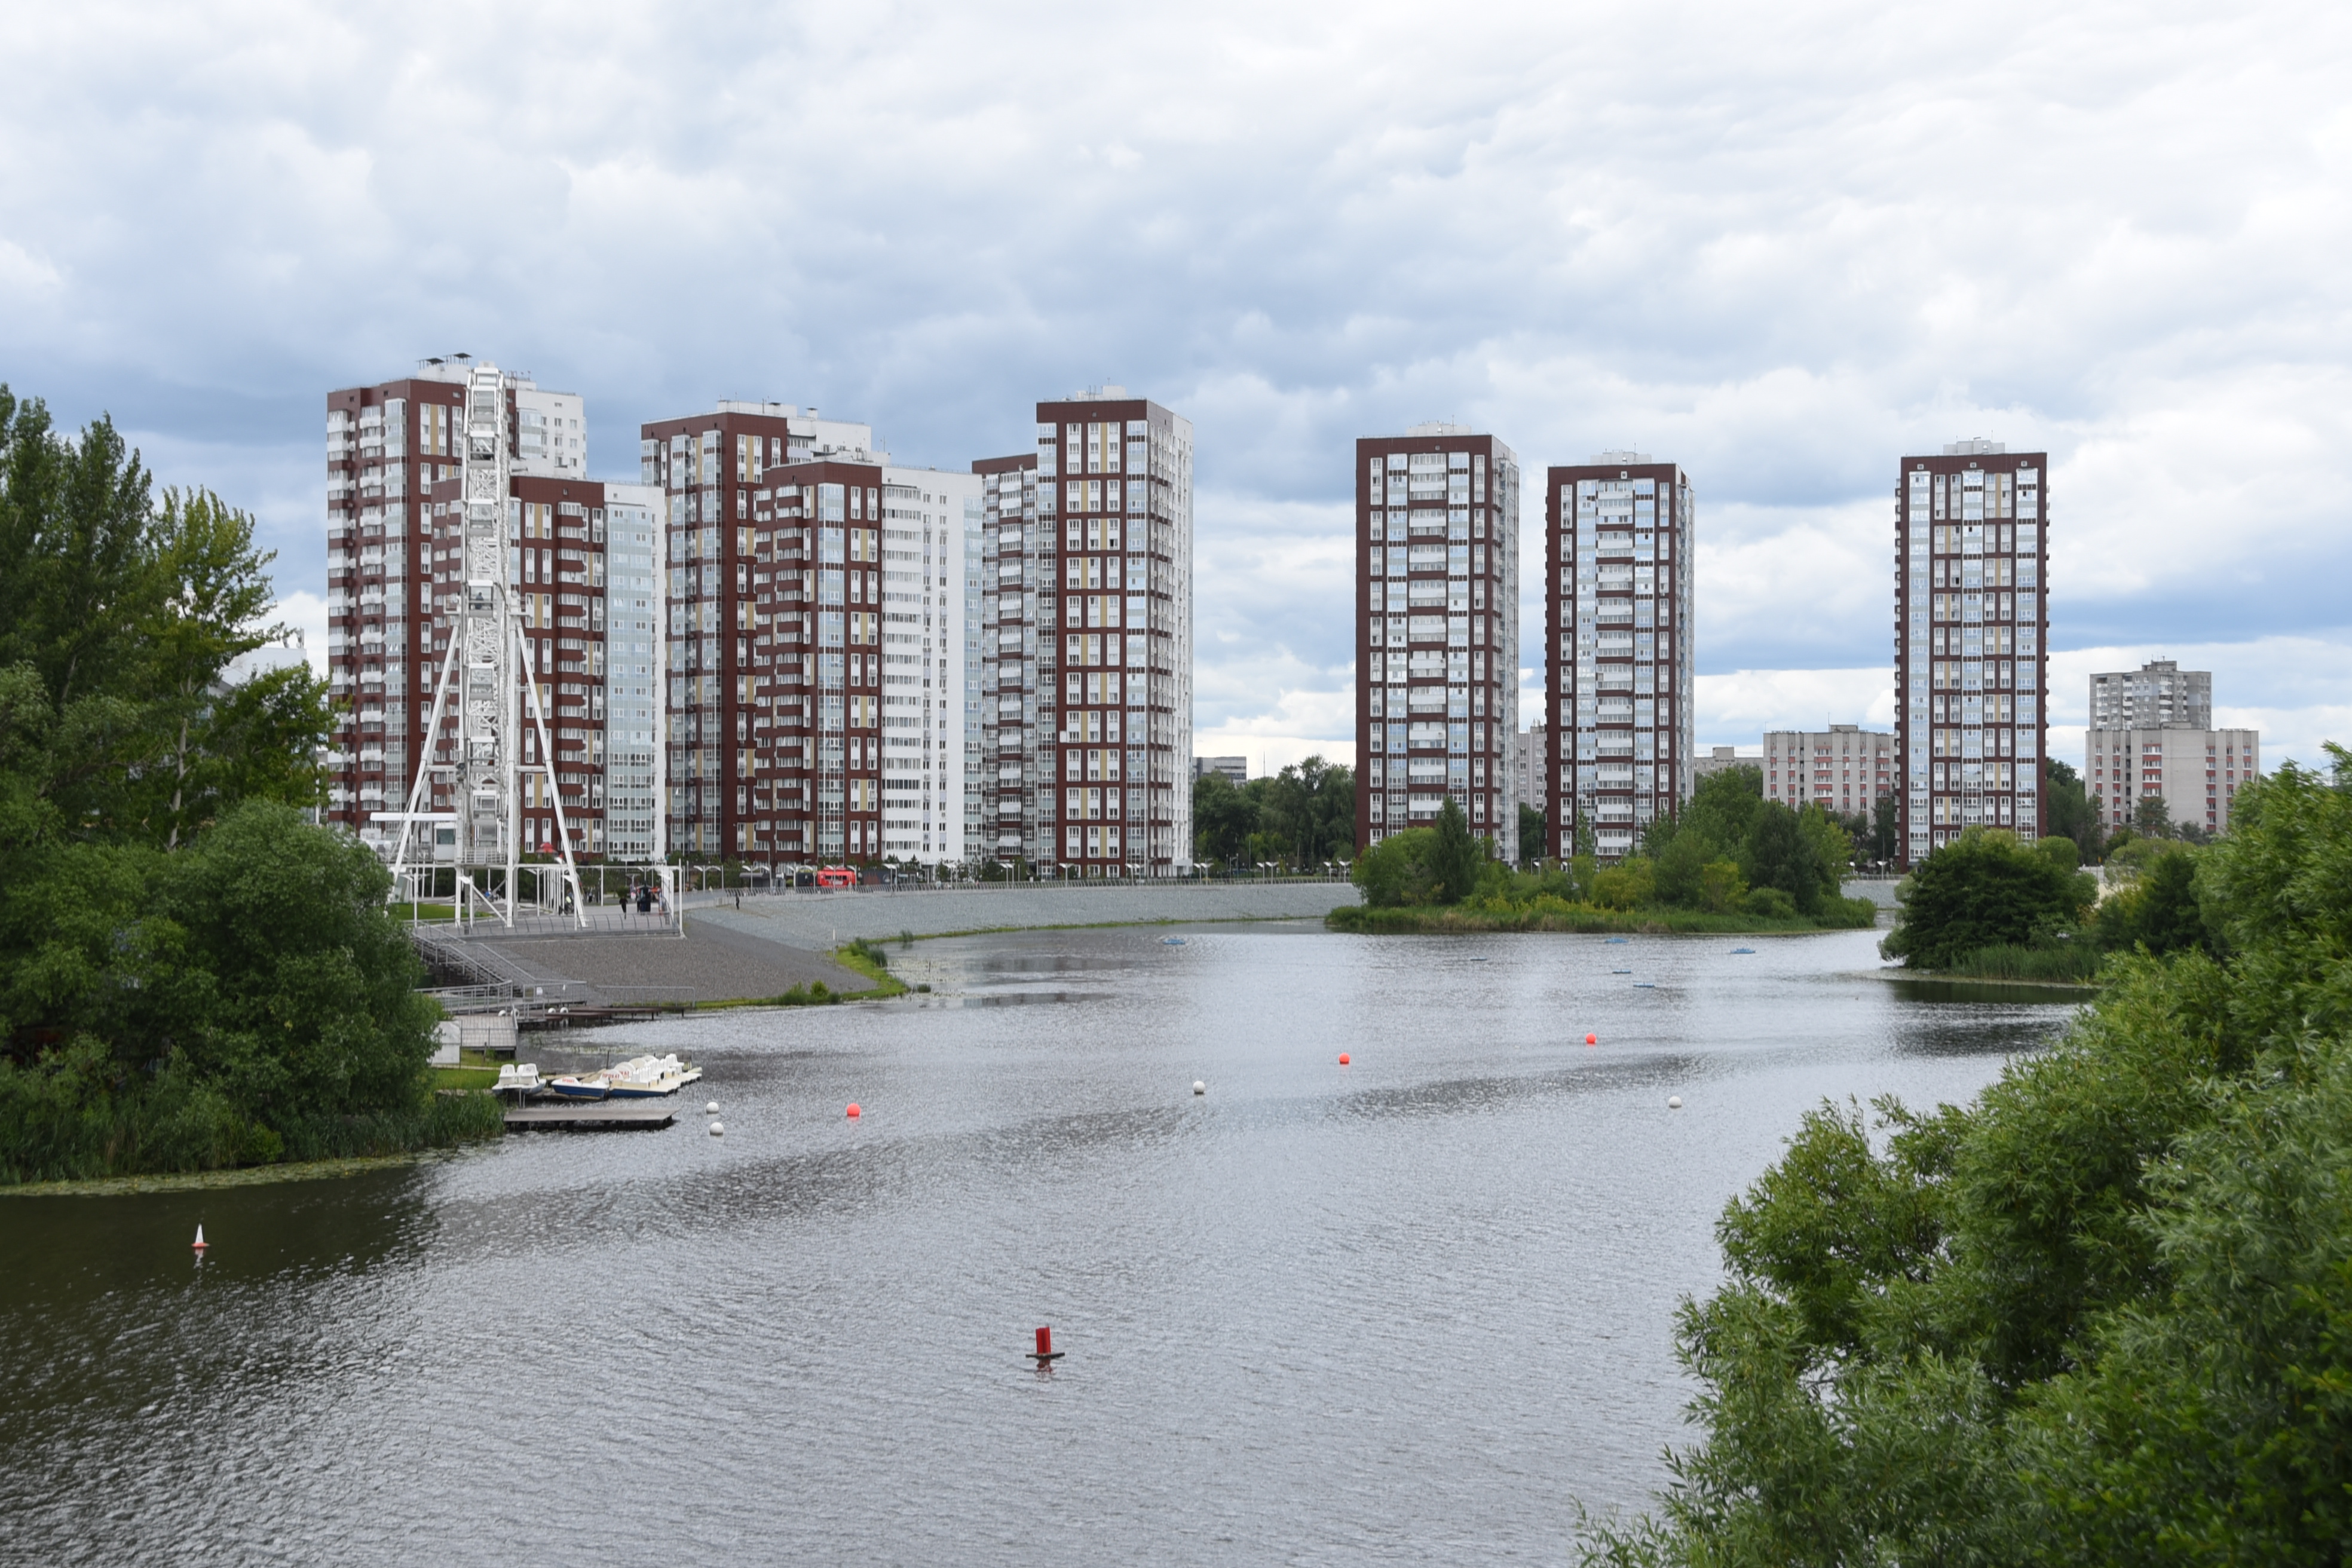 Темпы жилищного строительства в Ульяновске получили высокую оценку по итогам всероссийского исследования индекса качества жизни.